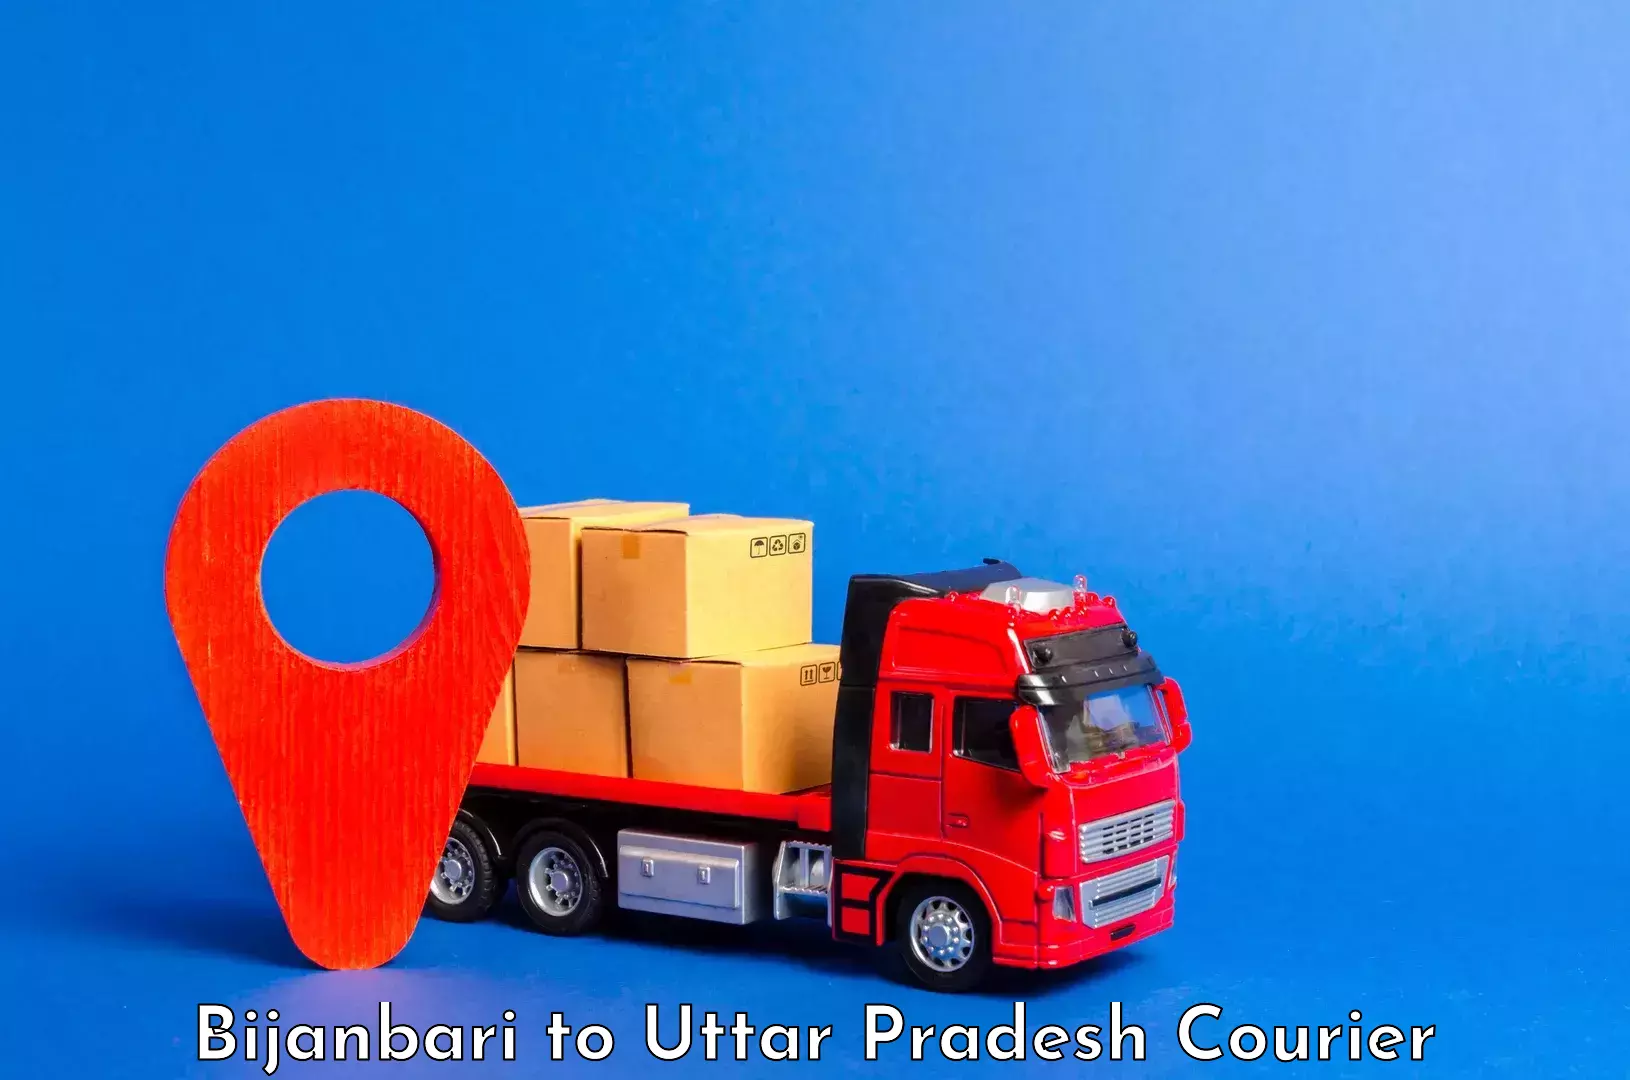 Luggage shipment processing Bijanbari to Uttar Pradesh